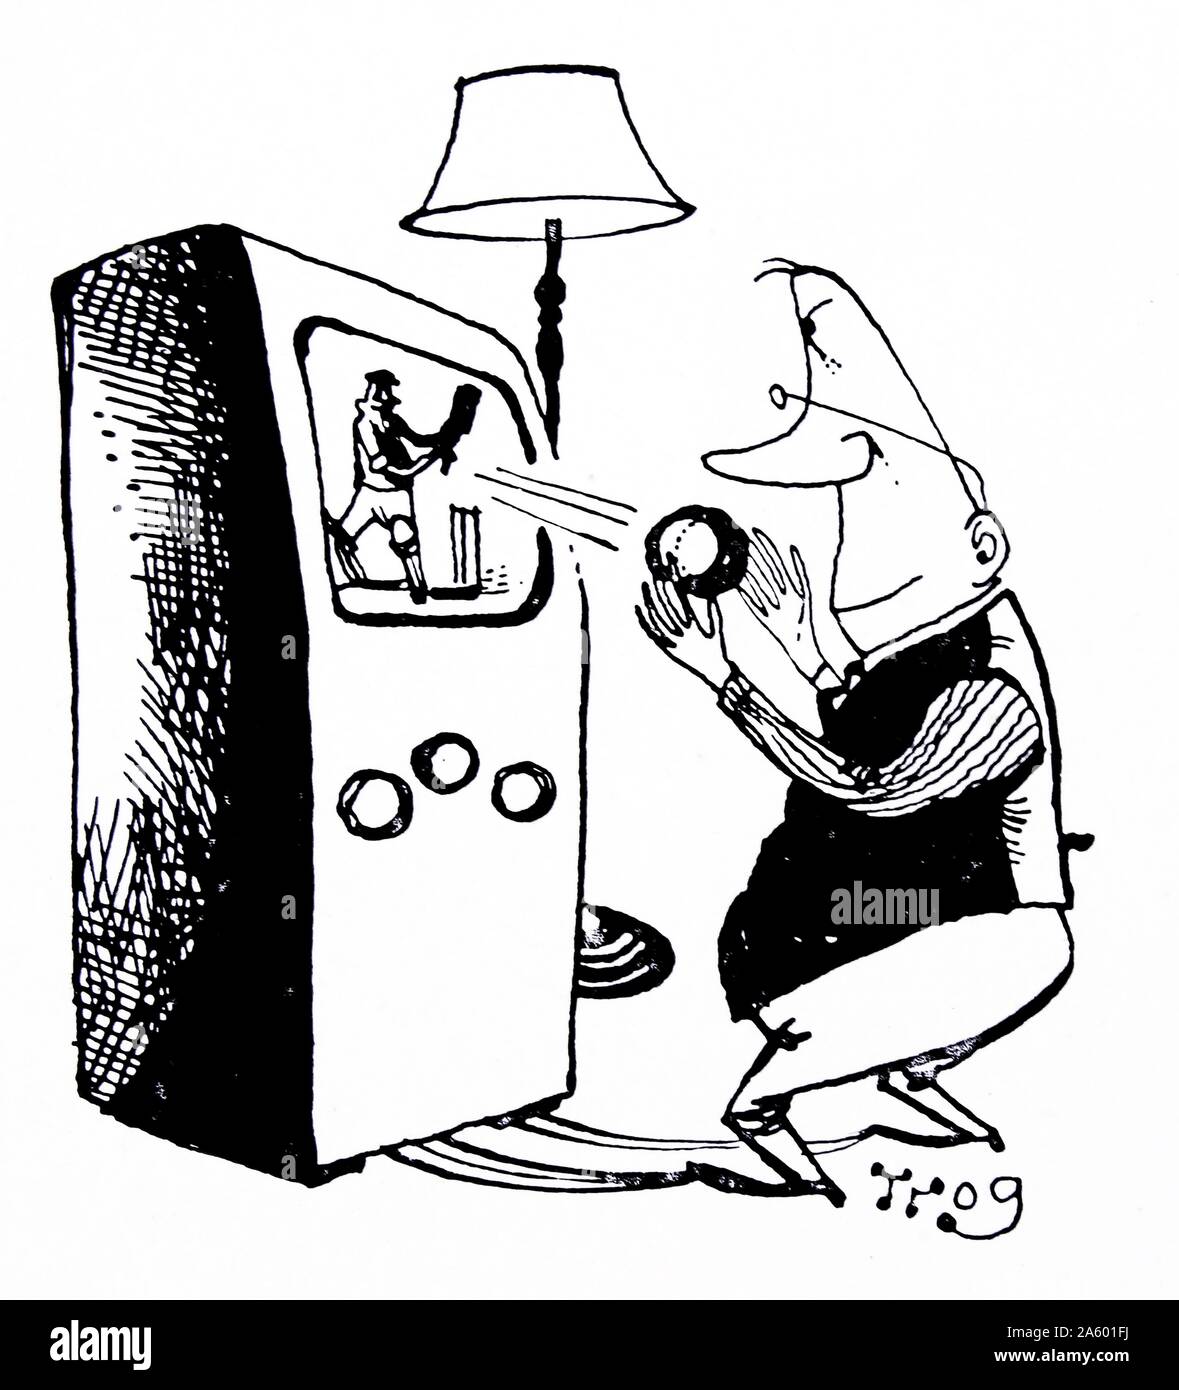 Karikatur eines Mannes fangen eine Cricket-Kugel, die aus einem Fernseher geschlagen ist, wie er mit großer Intensität Cricket Uhren. Von Walter Ernest "Wally" Fawkes (geb. 1924). Britisch-kanadischen jazz-Klarinettist und satirische Karikaturist. Als Karikaturist arbeitete er in der Regel unter dem Namen "Trog". Stockfoto